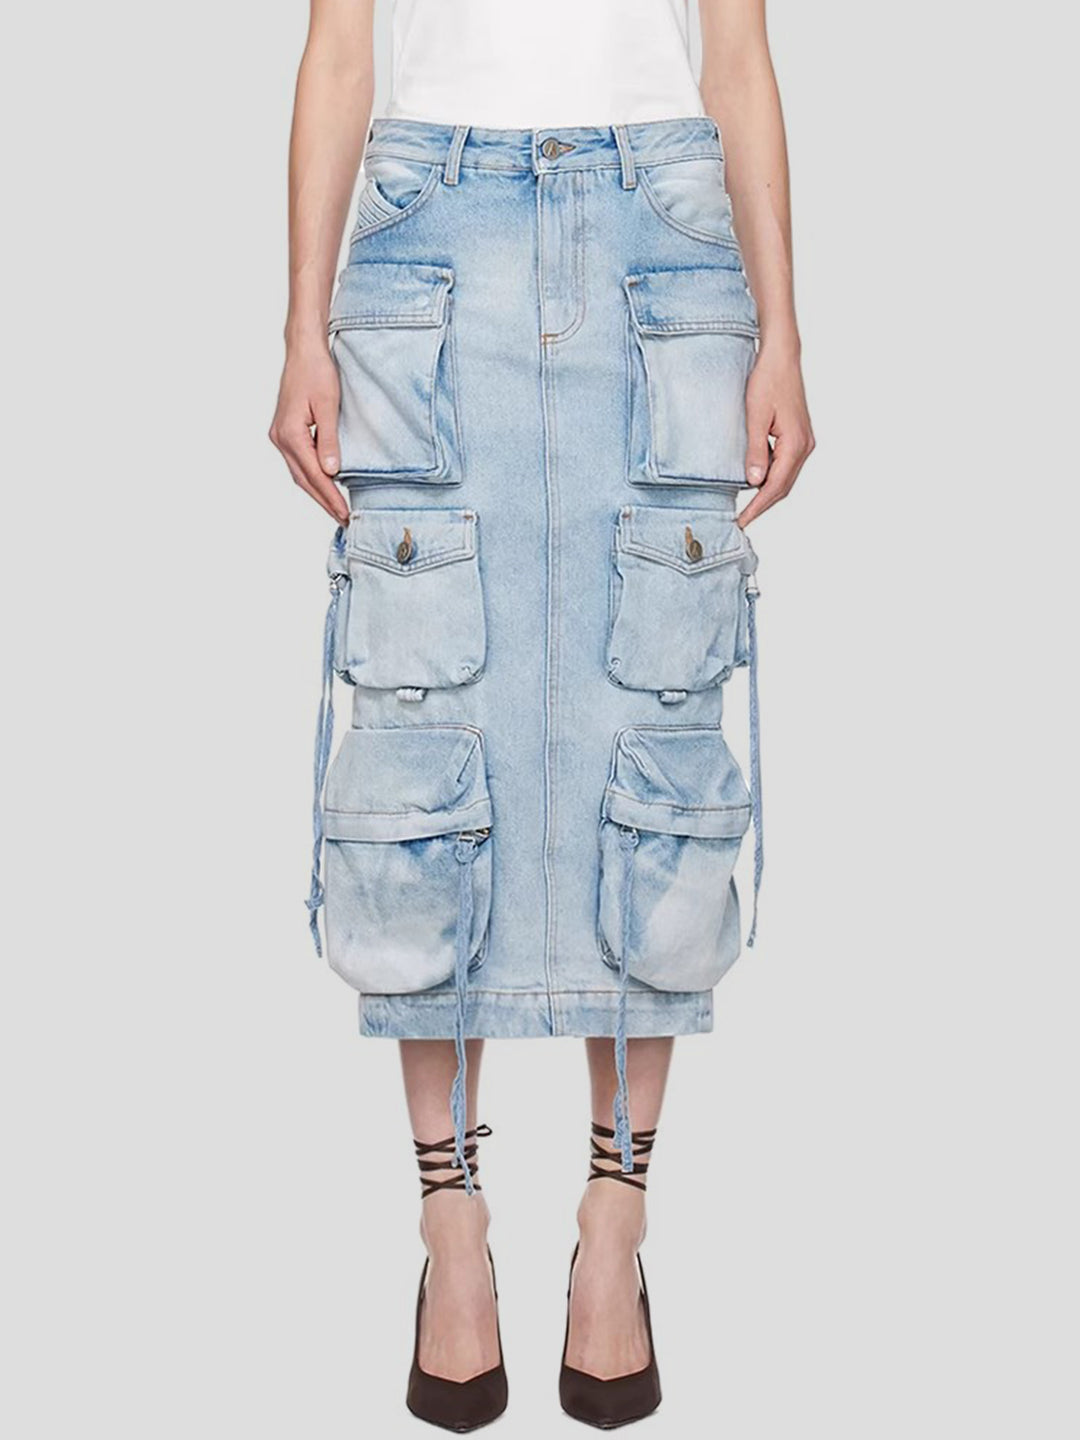 Women's Slit Midi Denim Skirt with Pockets